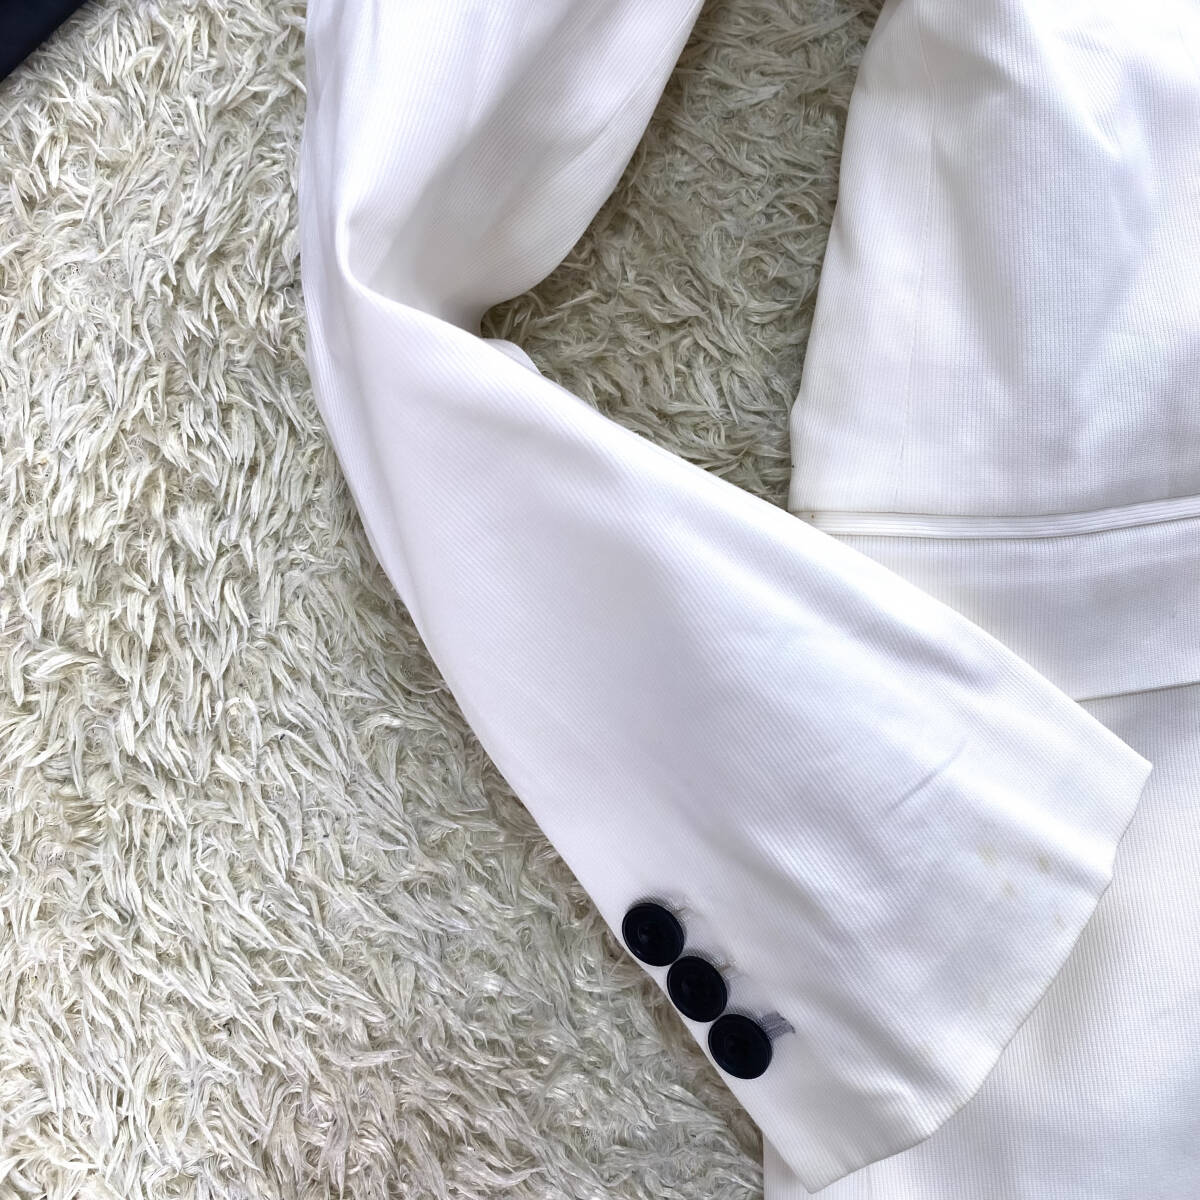 絶版美品BURBERRY BLACKLABELテーラードジャケットL~Mピュアホワイト白刻印釦ノバチェック柄大きいサイズブラレバーバリーブラックレーベル_画像4